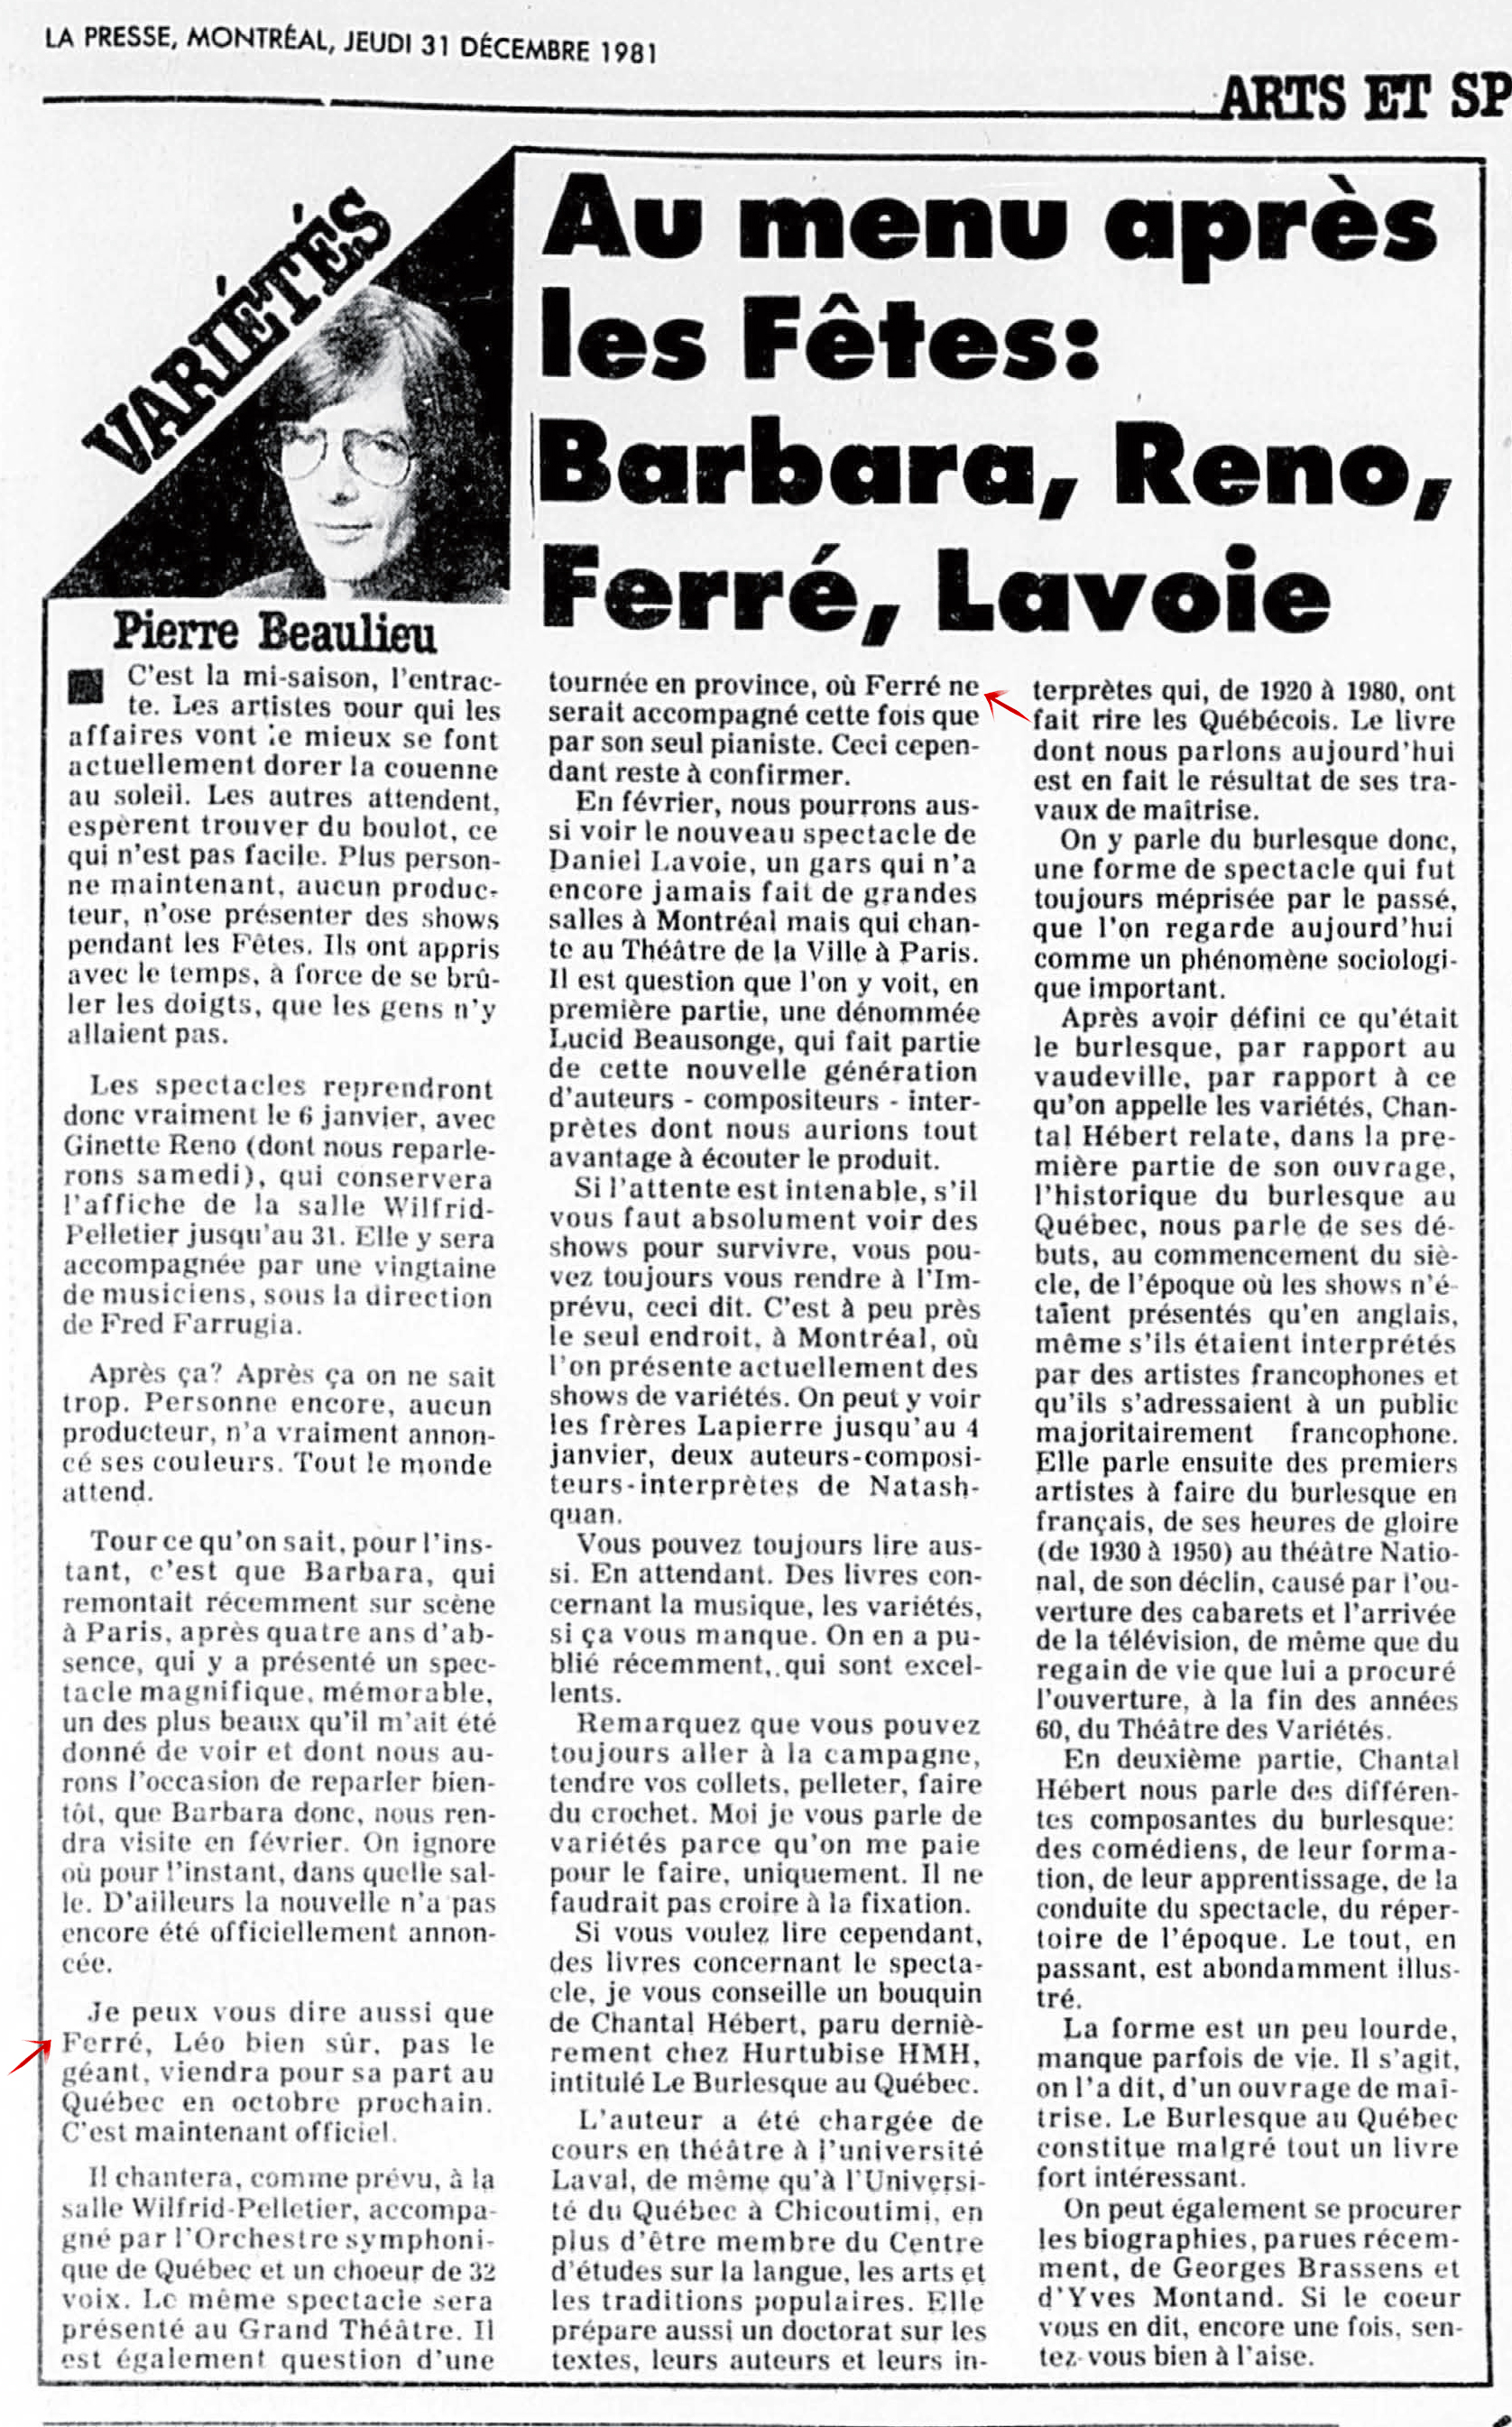 Léo Ferré - La Presse, 31 décembre 1981, Cahier A